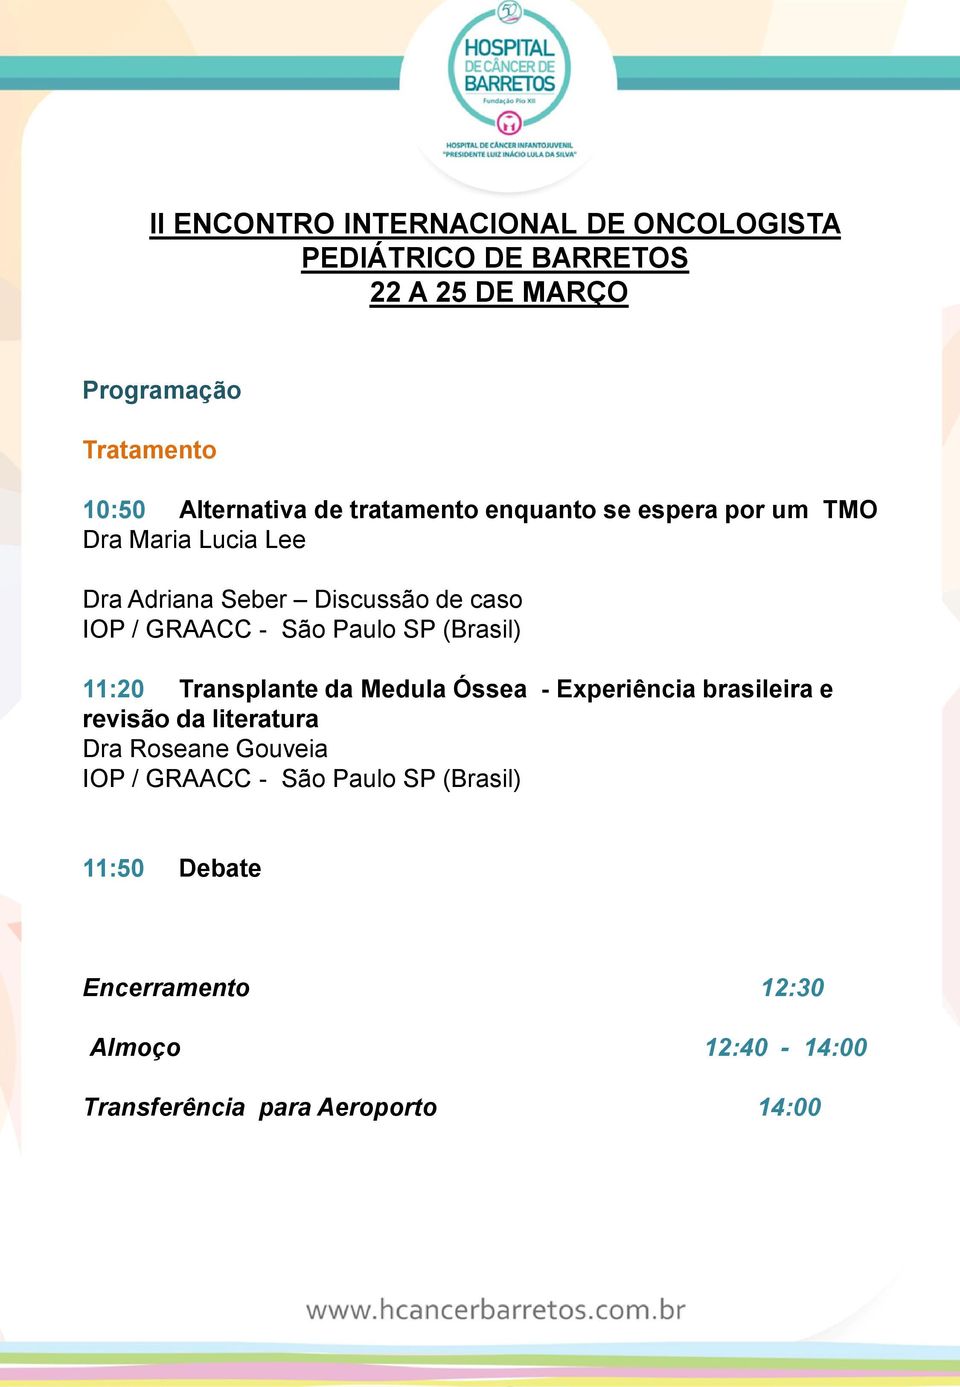 Óssea - Experiência brasileira e revisão da literatura Dra Roseane Gouveia IOP / GRAACC - São